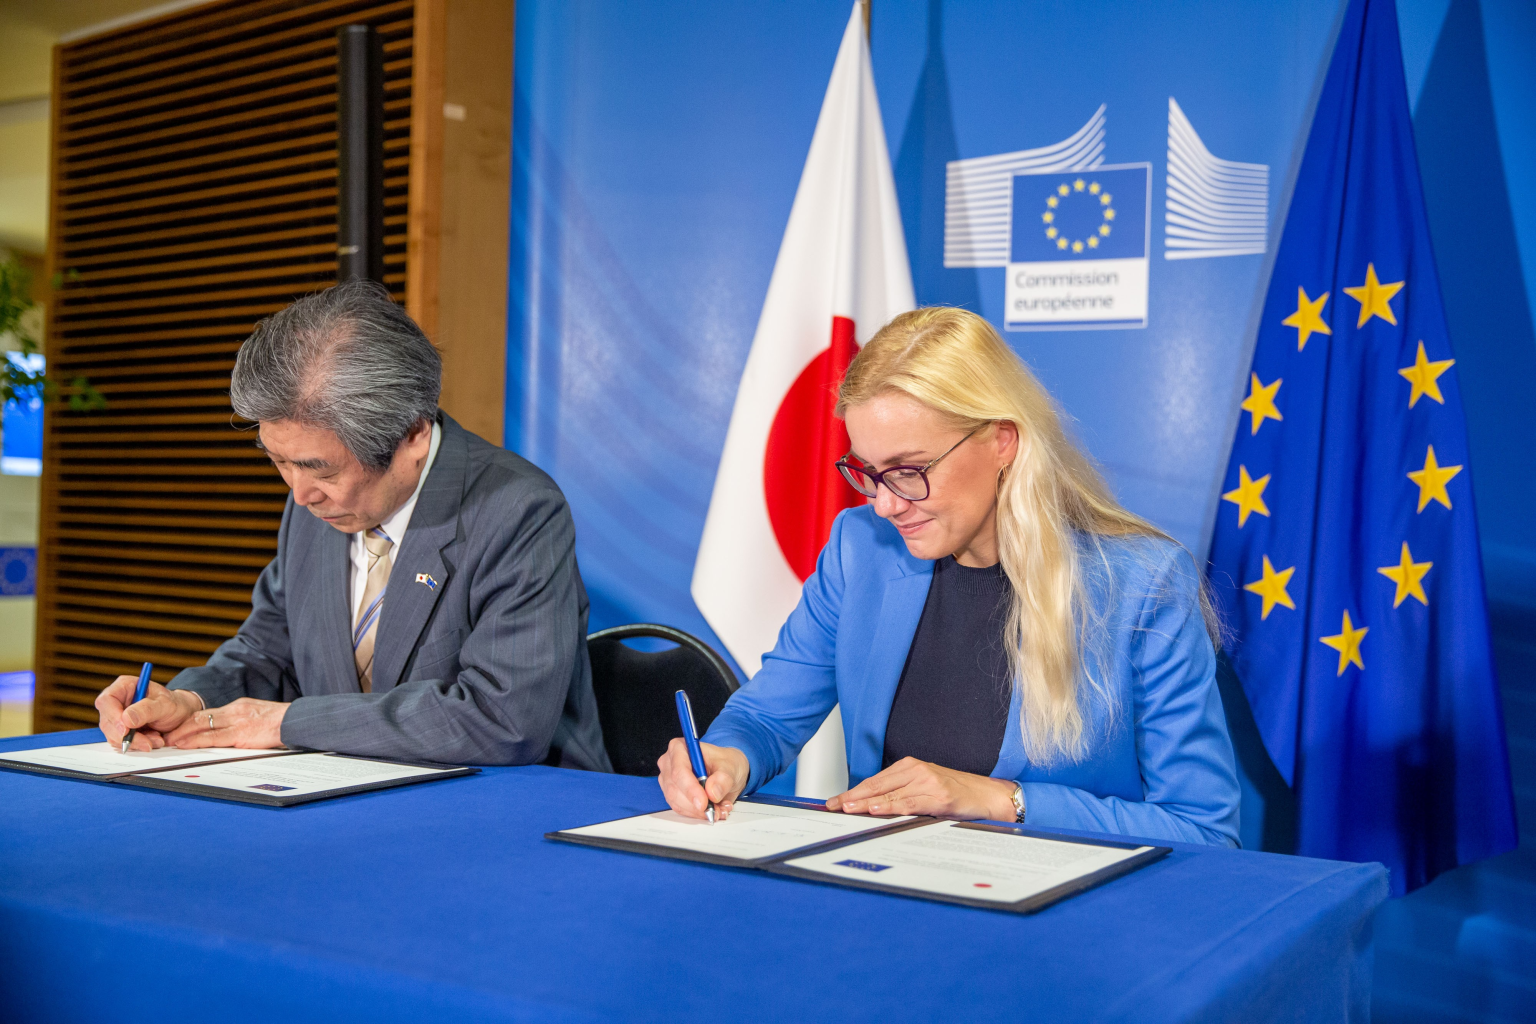 Kazuo Kodama, ambassadeur extraordinaire et plénipotentiaire du Japon auprès de l’UE, et la commissaire européenne à l’Energie et représentante d’Euratom, Kadri Simson, ont signé le 2 mars 2020 la déclaration commune relevant de l’«approche élargie».